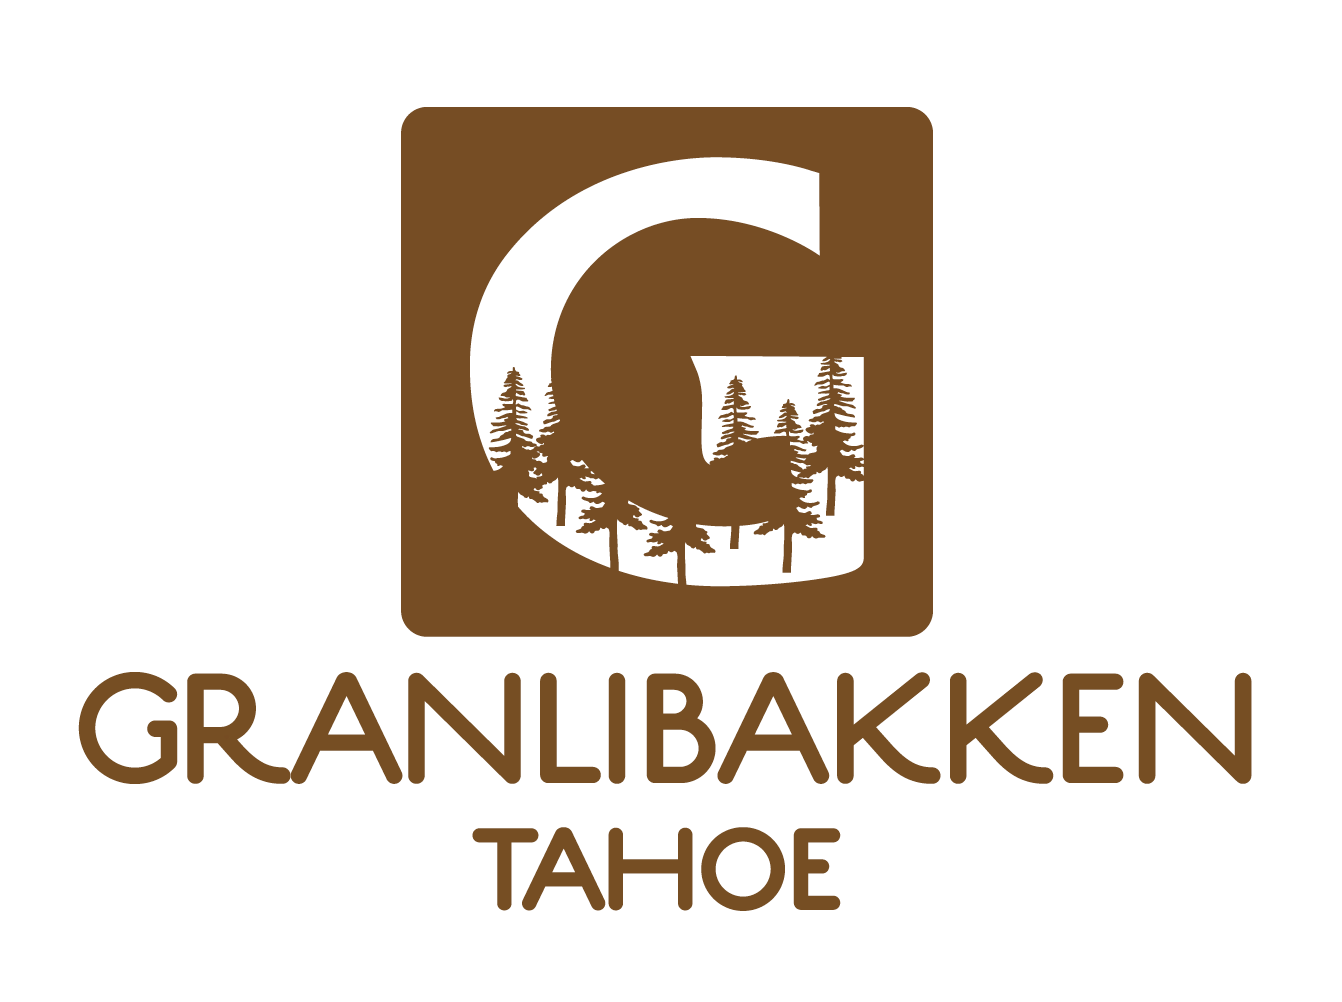 Granlibakken logo Pride Ride at Homewood Discount